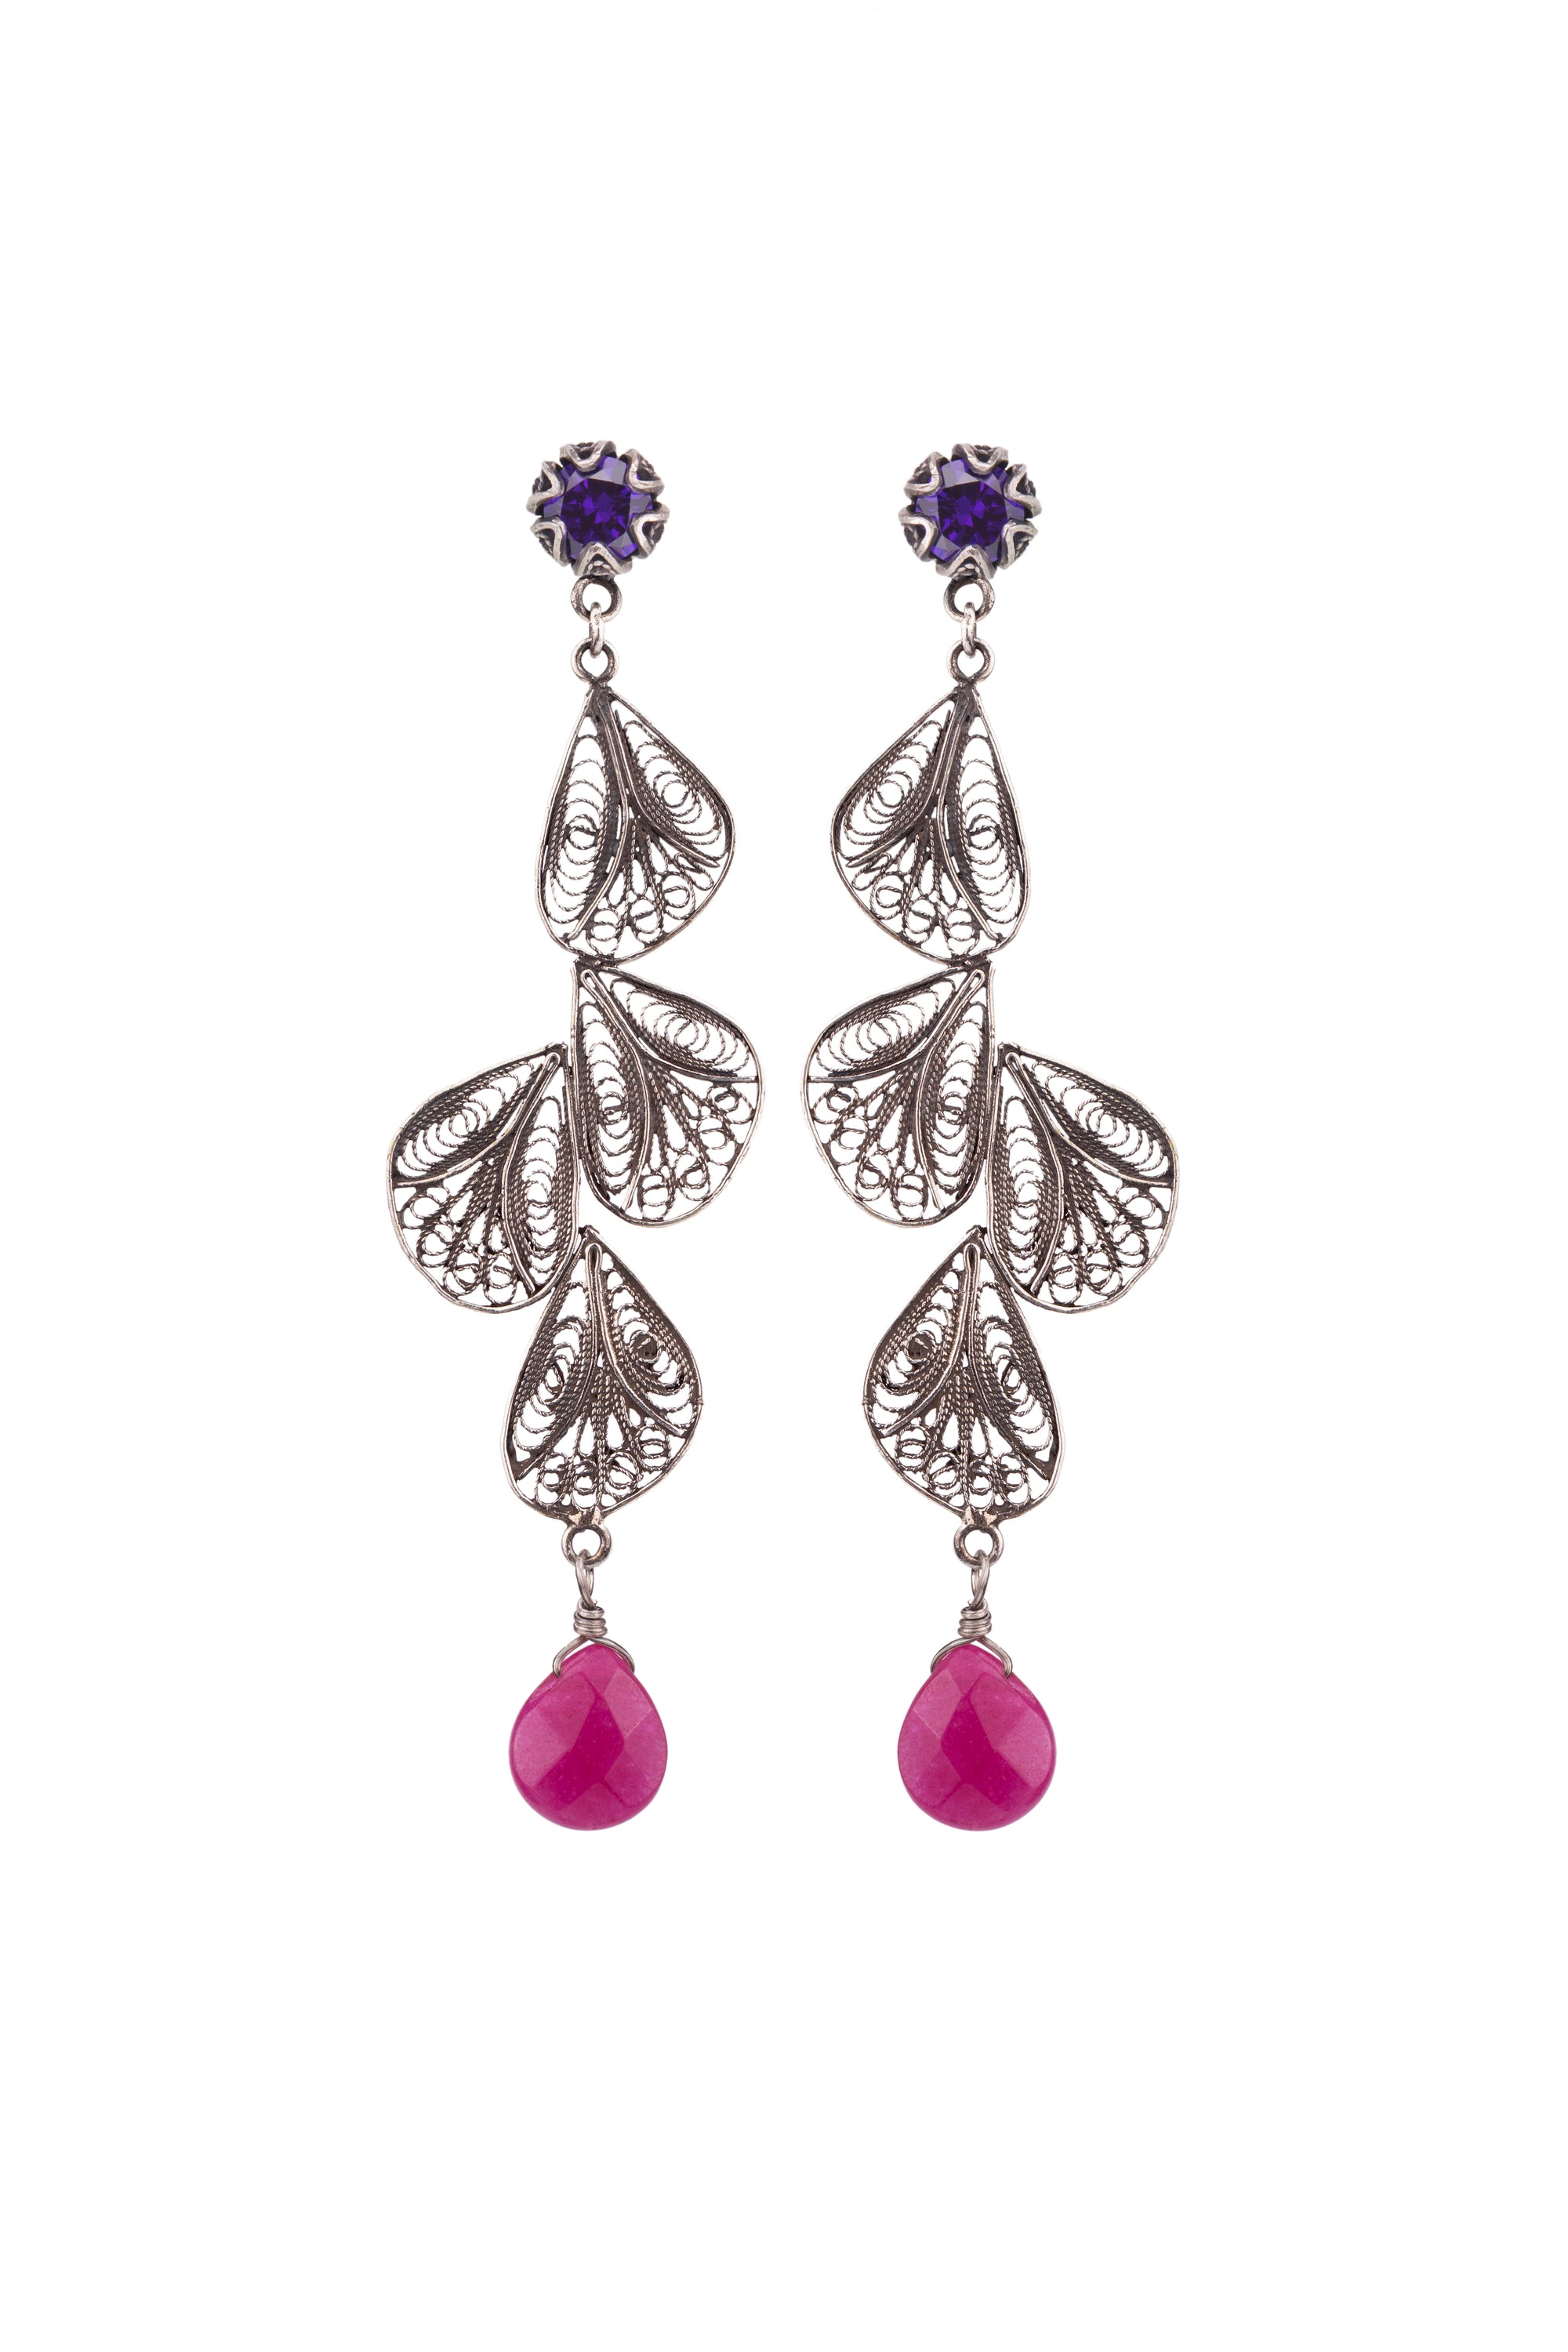 Silver Filigree Flower Petal Earrings - purple CZ / raspberry jade